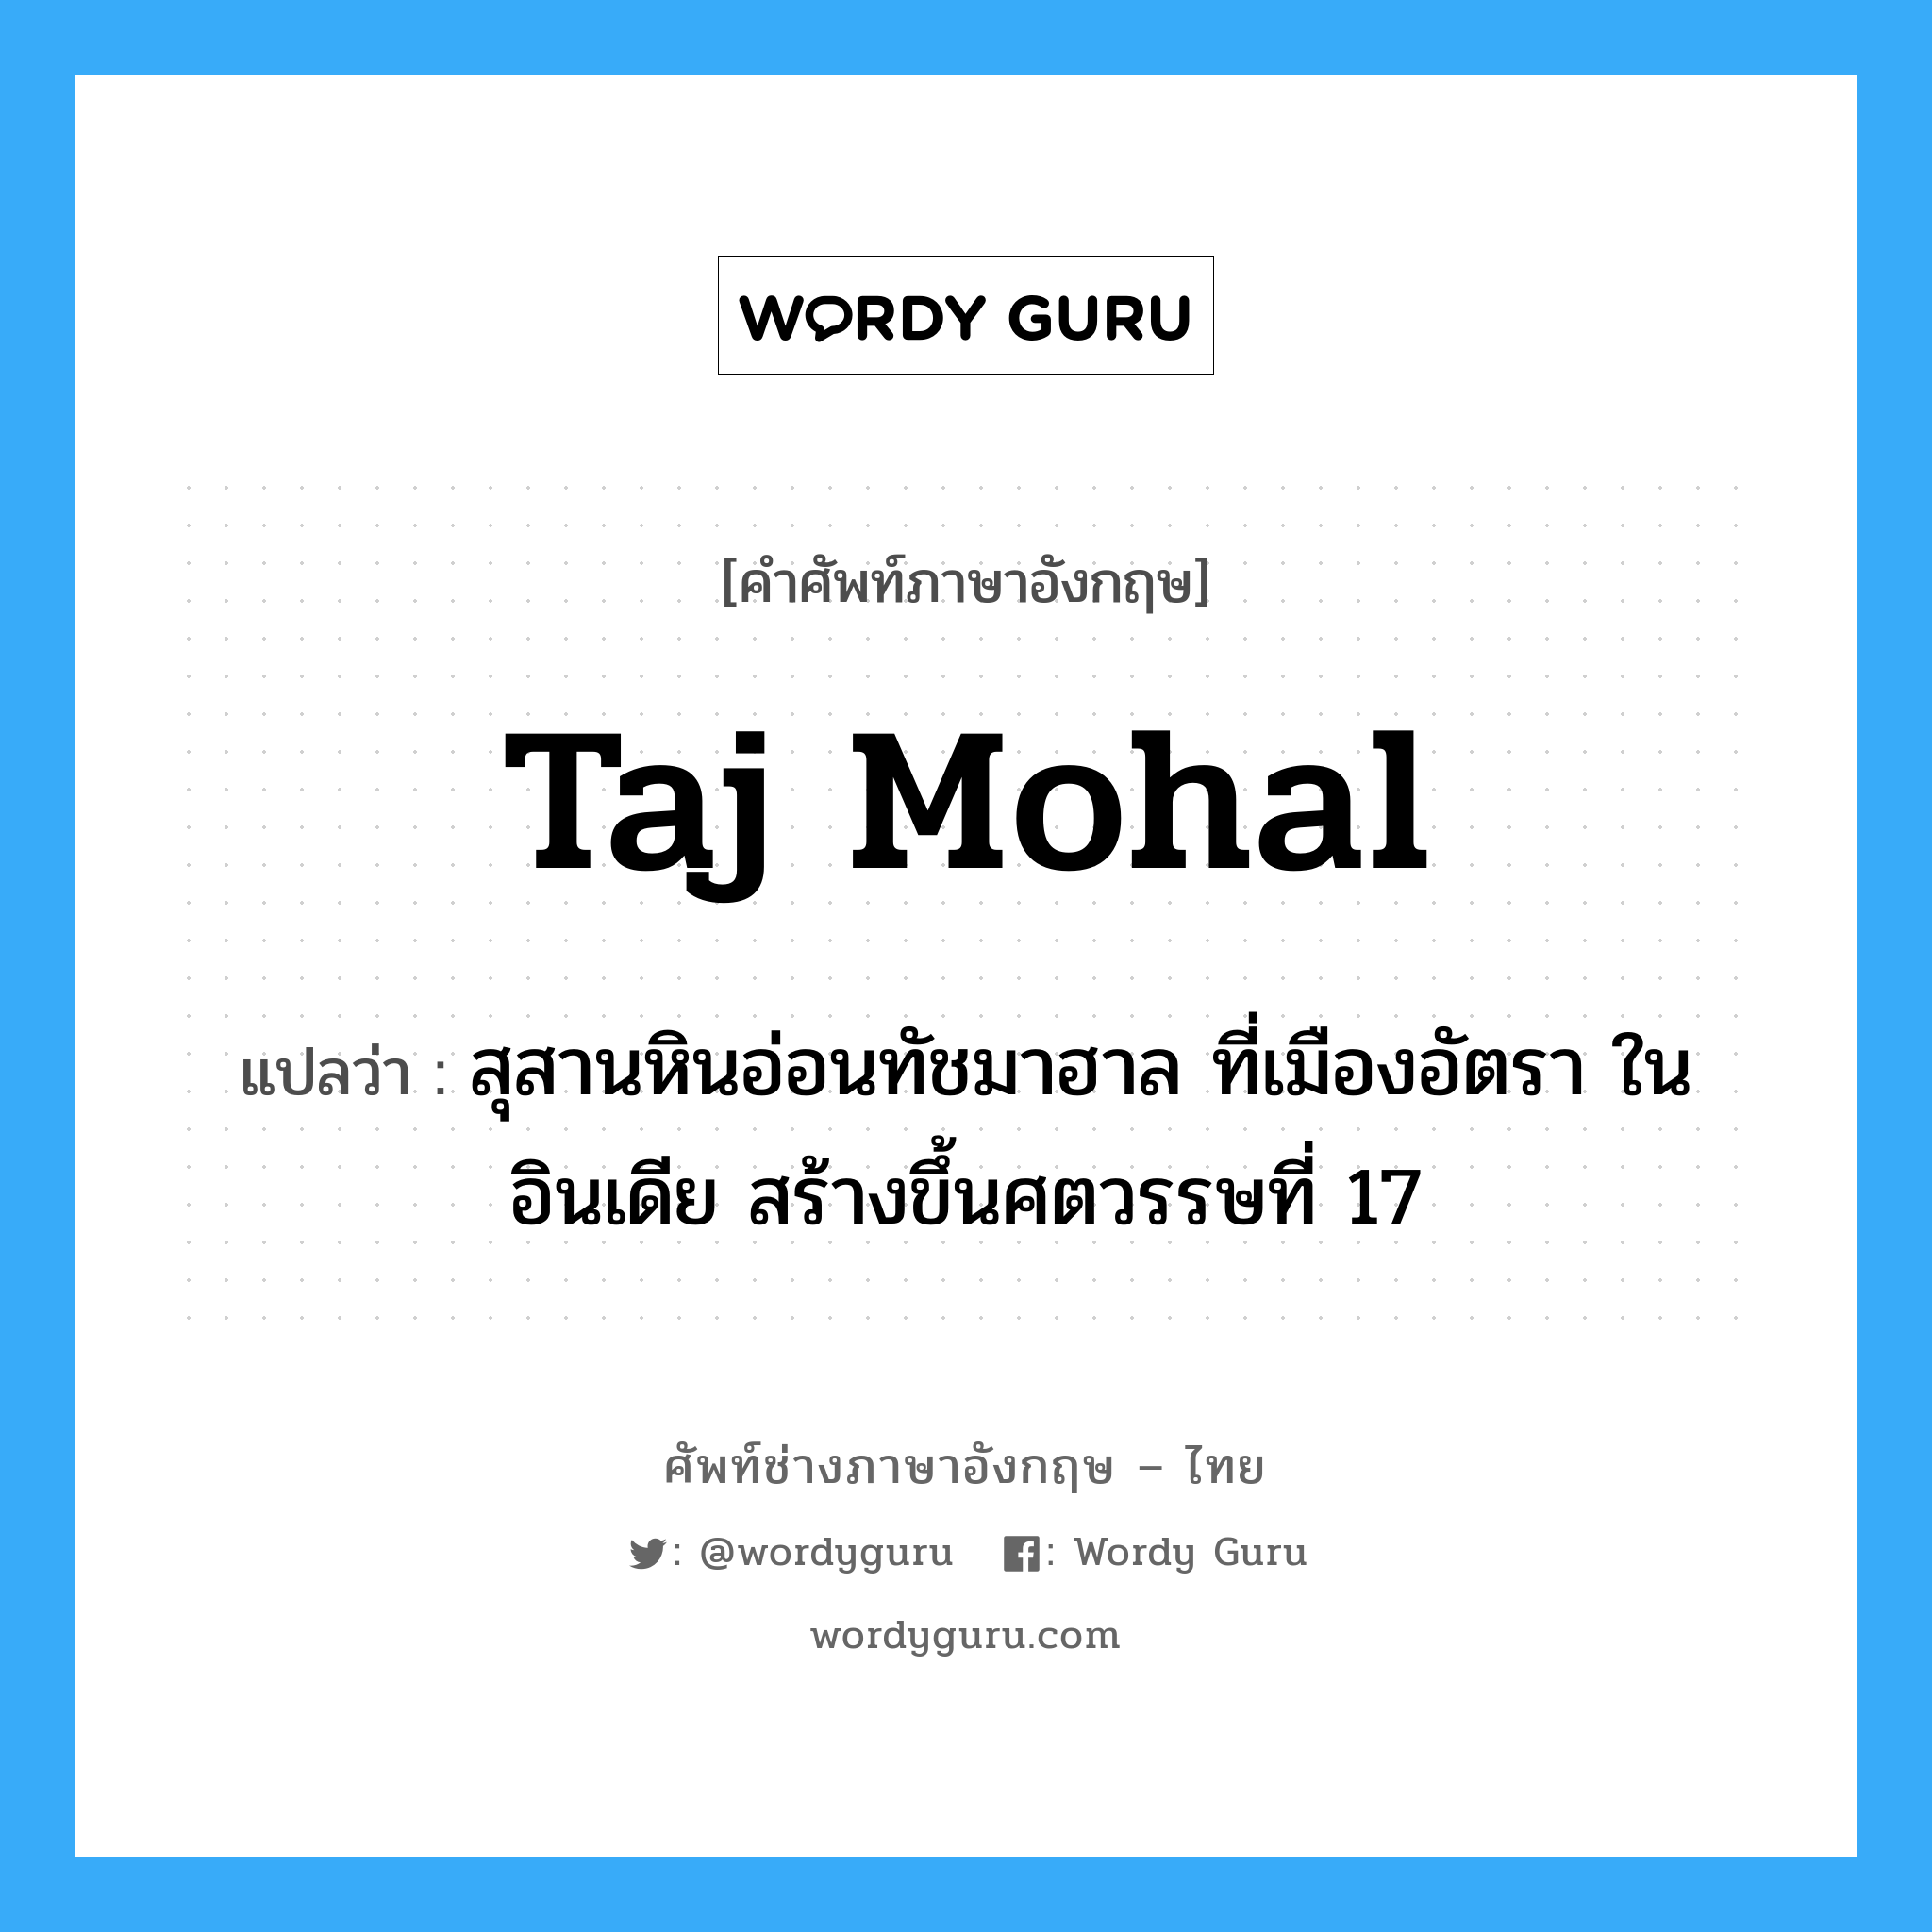 Taj Mohal แปลว่า?, คำศัพท์ช่างภาษาอังกฤษ - ไทย Taj Mohal คำศัพท์ภาษาอังกฤษ Taj Mohal แปลว่า สุสานหินอ่อนทัชมาฮาล ที่เมืองอัตรา ในอินเดีย สร้างขึ้นศตวรรษที่ 17